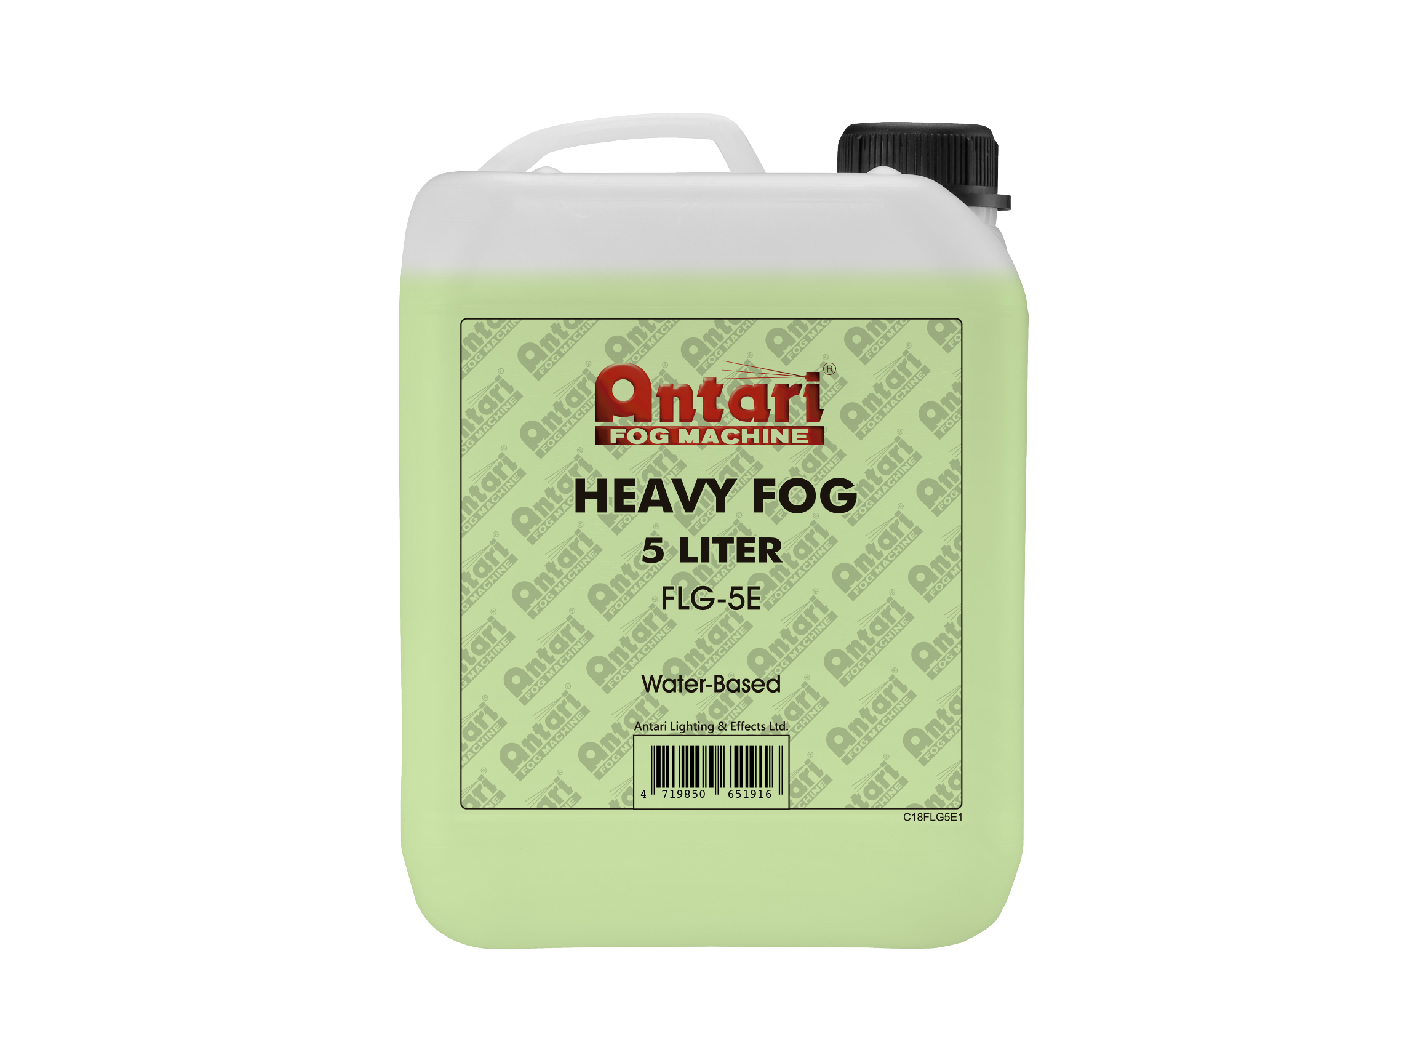 FLG-5E Heavy Fog Fluid